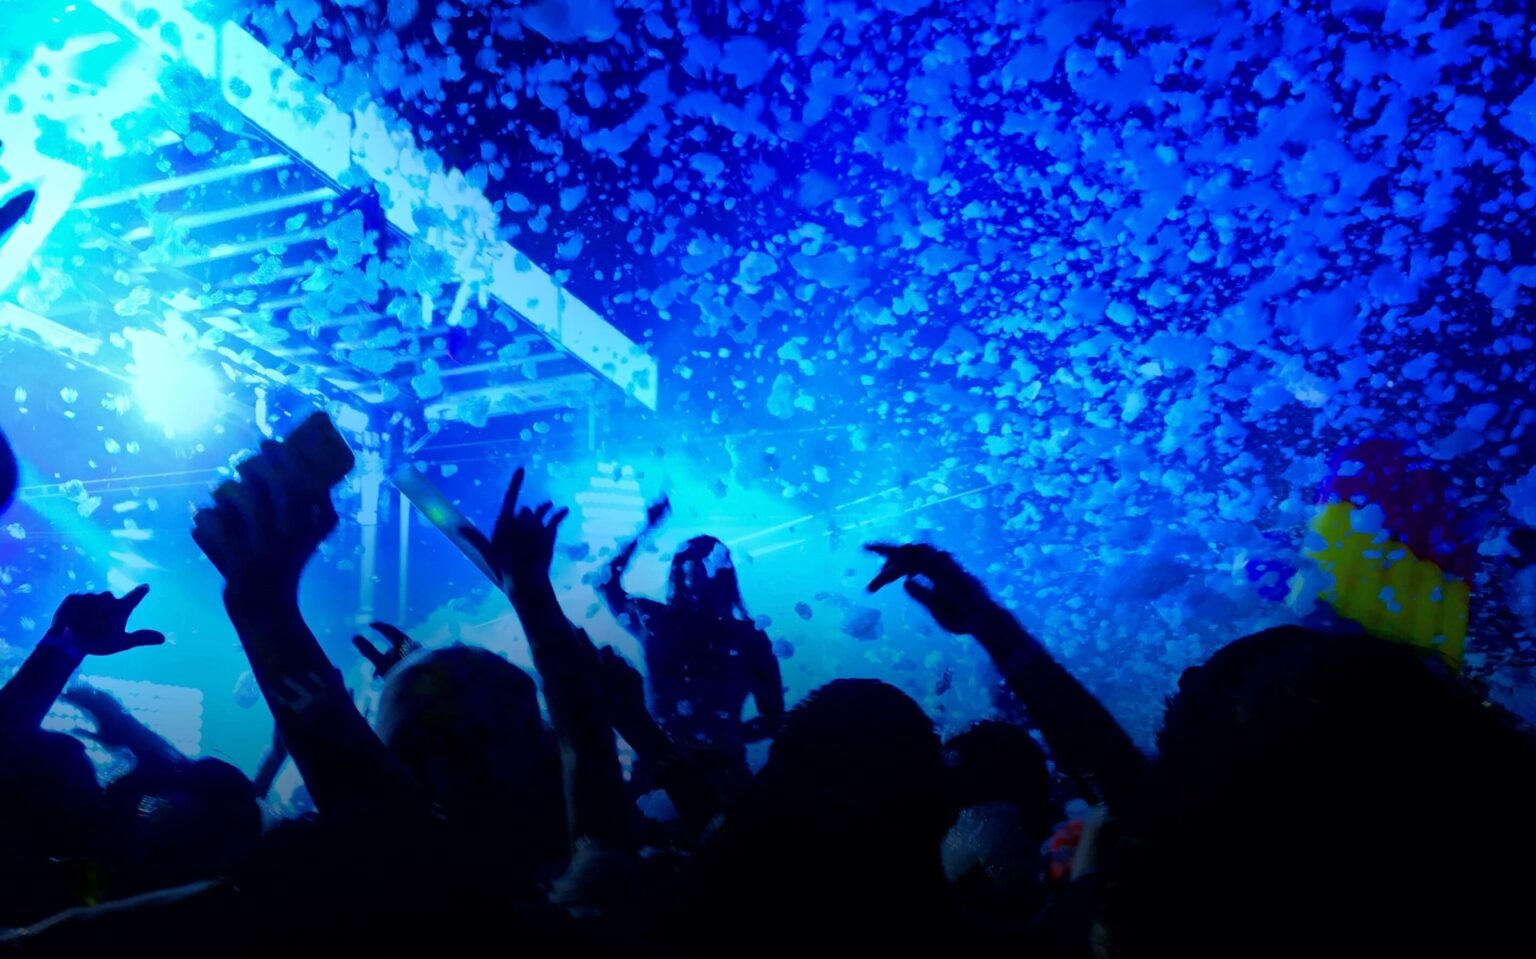 紙吹雪が舞う青い照明のライブ